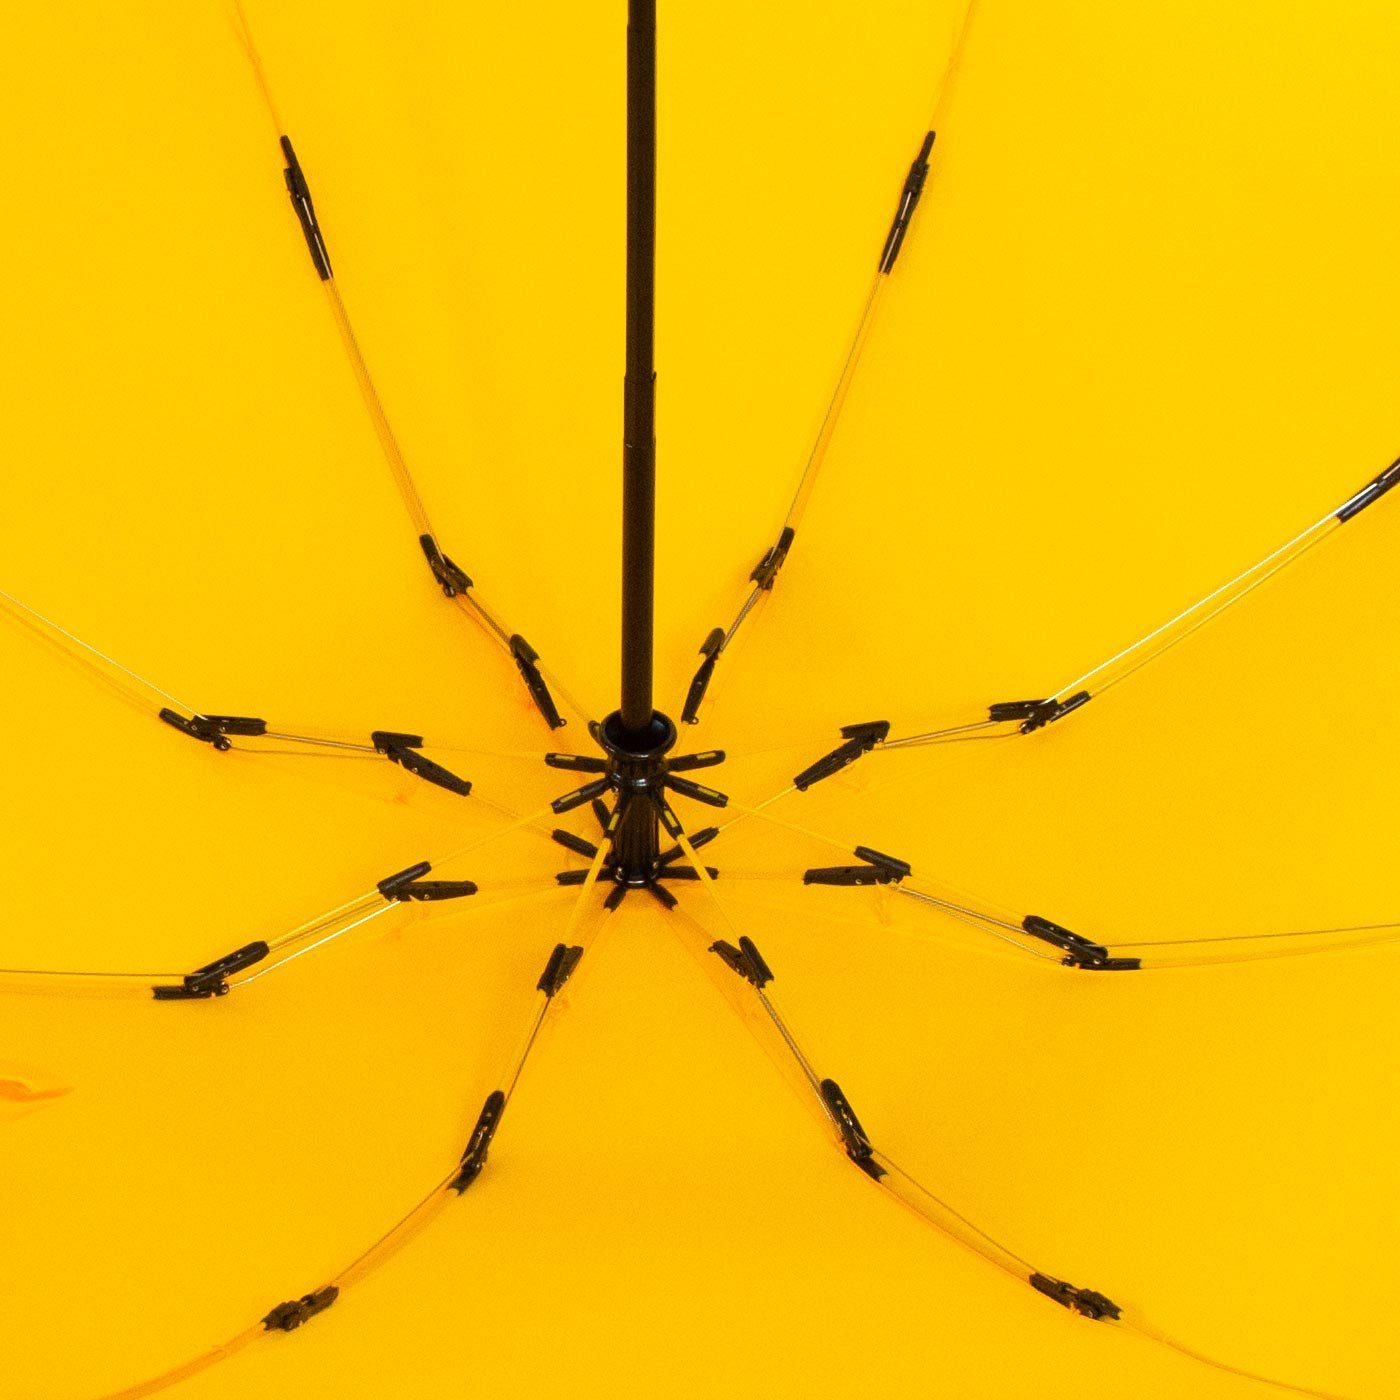 öffnender mit bunten Reverse umgekehrt Taschenregenschirm Speichen iX-brella stabilen Fiberglas-Automatiksch, gelb